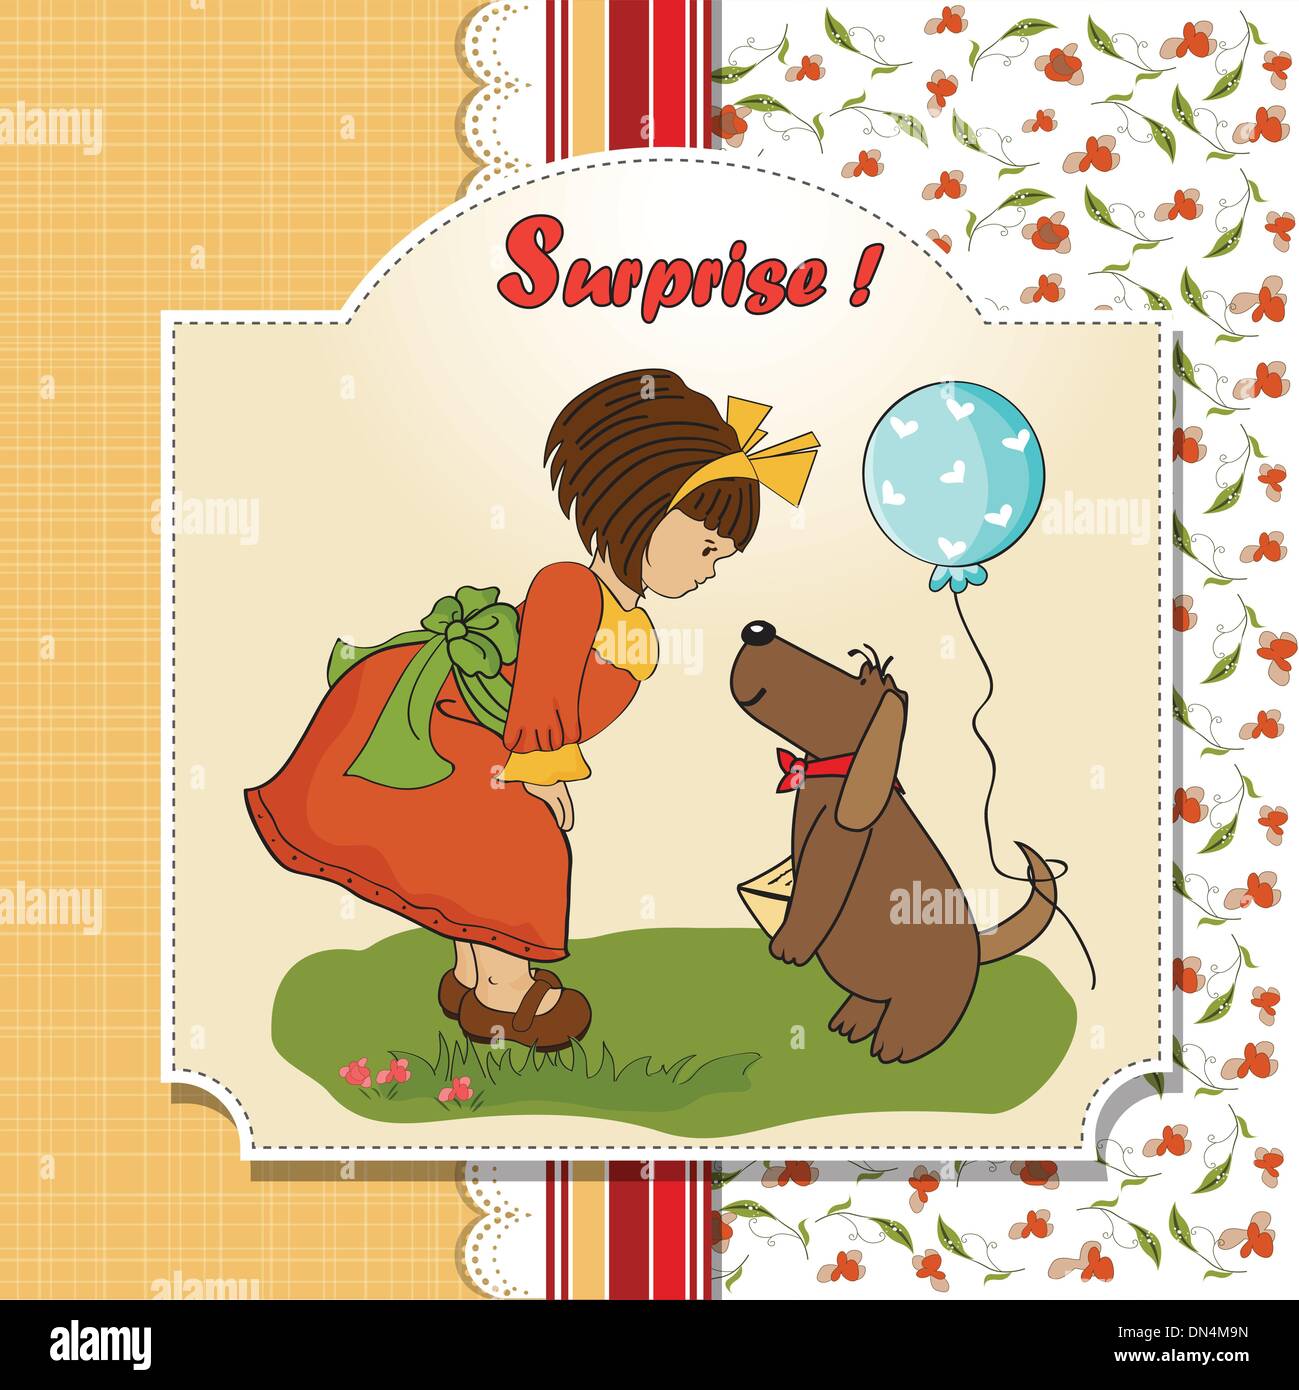 Jeune fille et son chien dans une magnifique carte de souhaits d'anniversaire Illustration de Vecteur